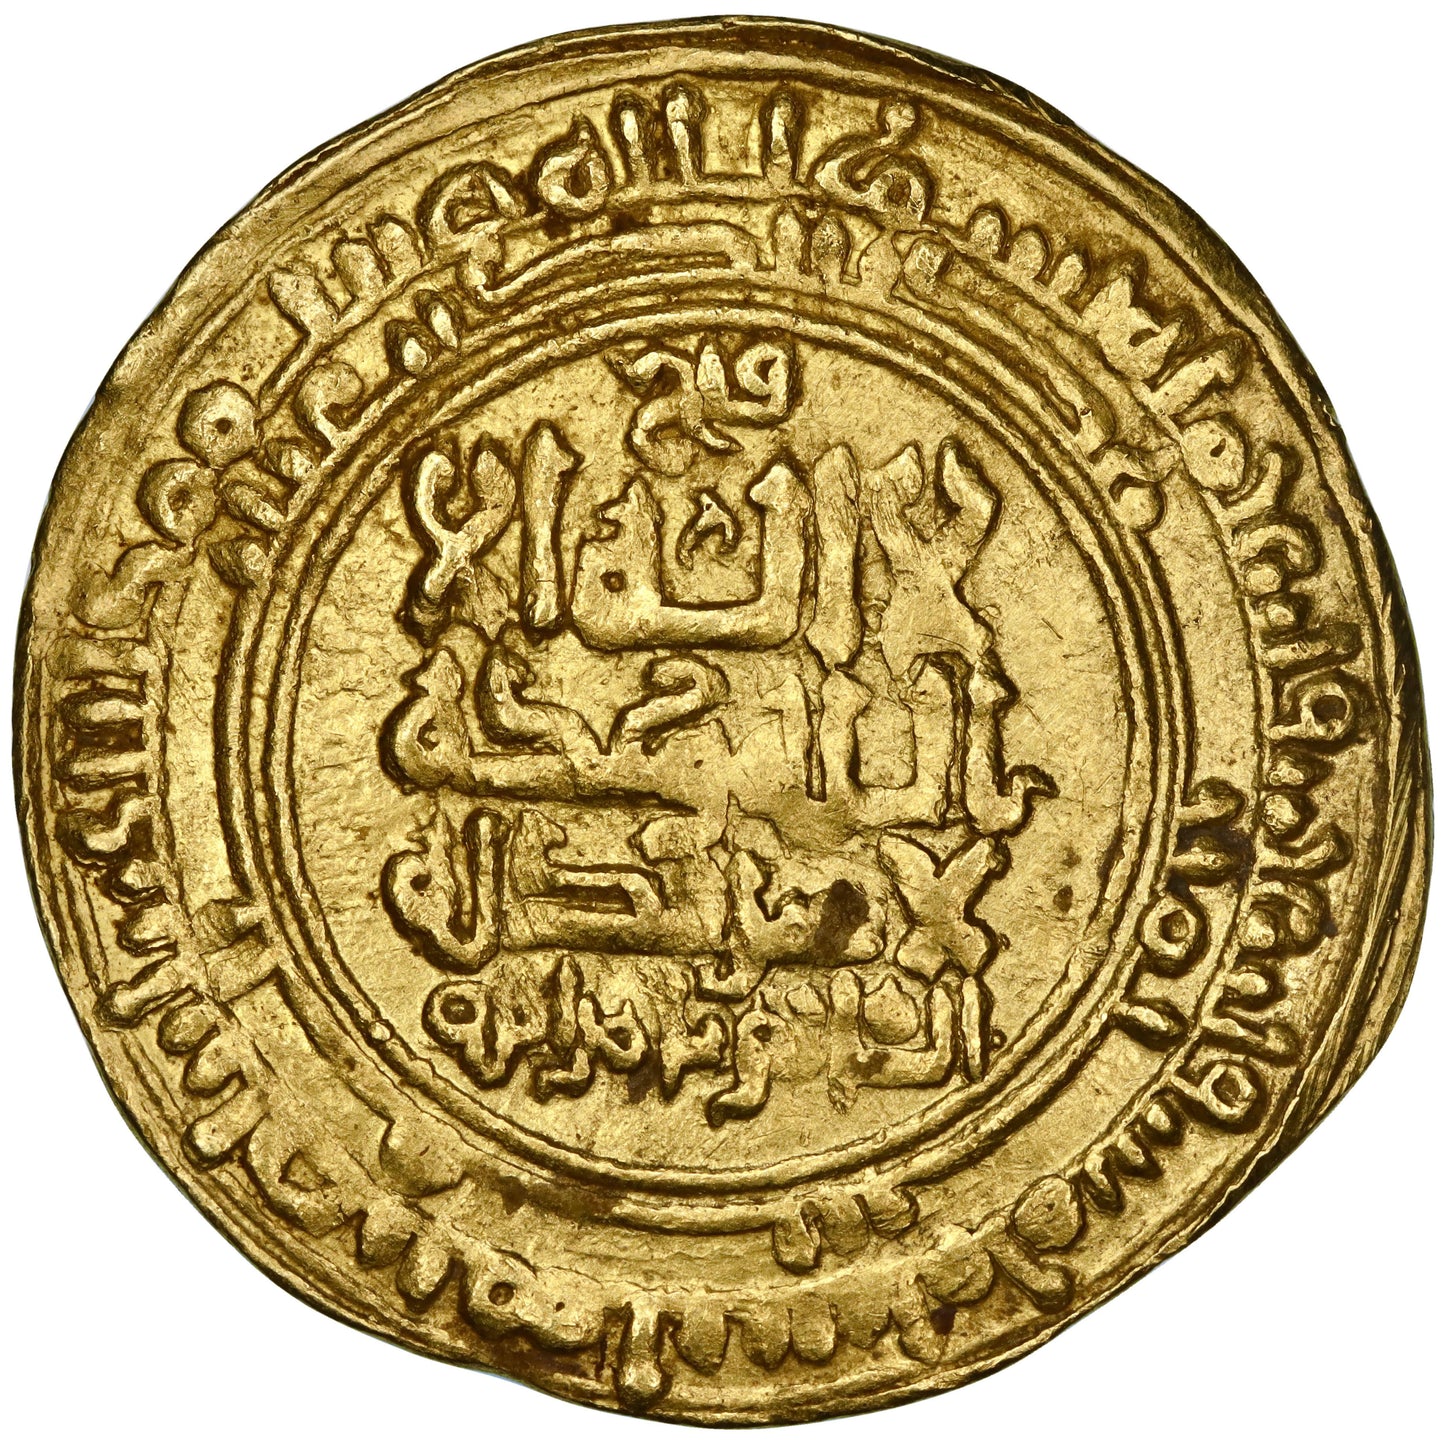 Great Seljuq, Tughril Beg, gold dinar, Isbahan (Isfahan) mint, AH 445, Seljuq emblem, citing Al-Qa'im